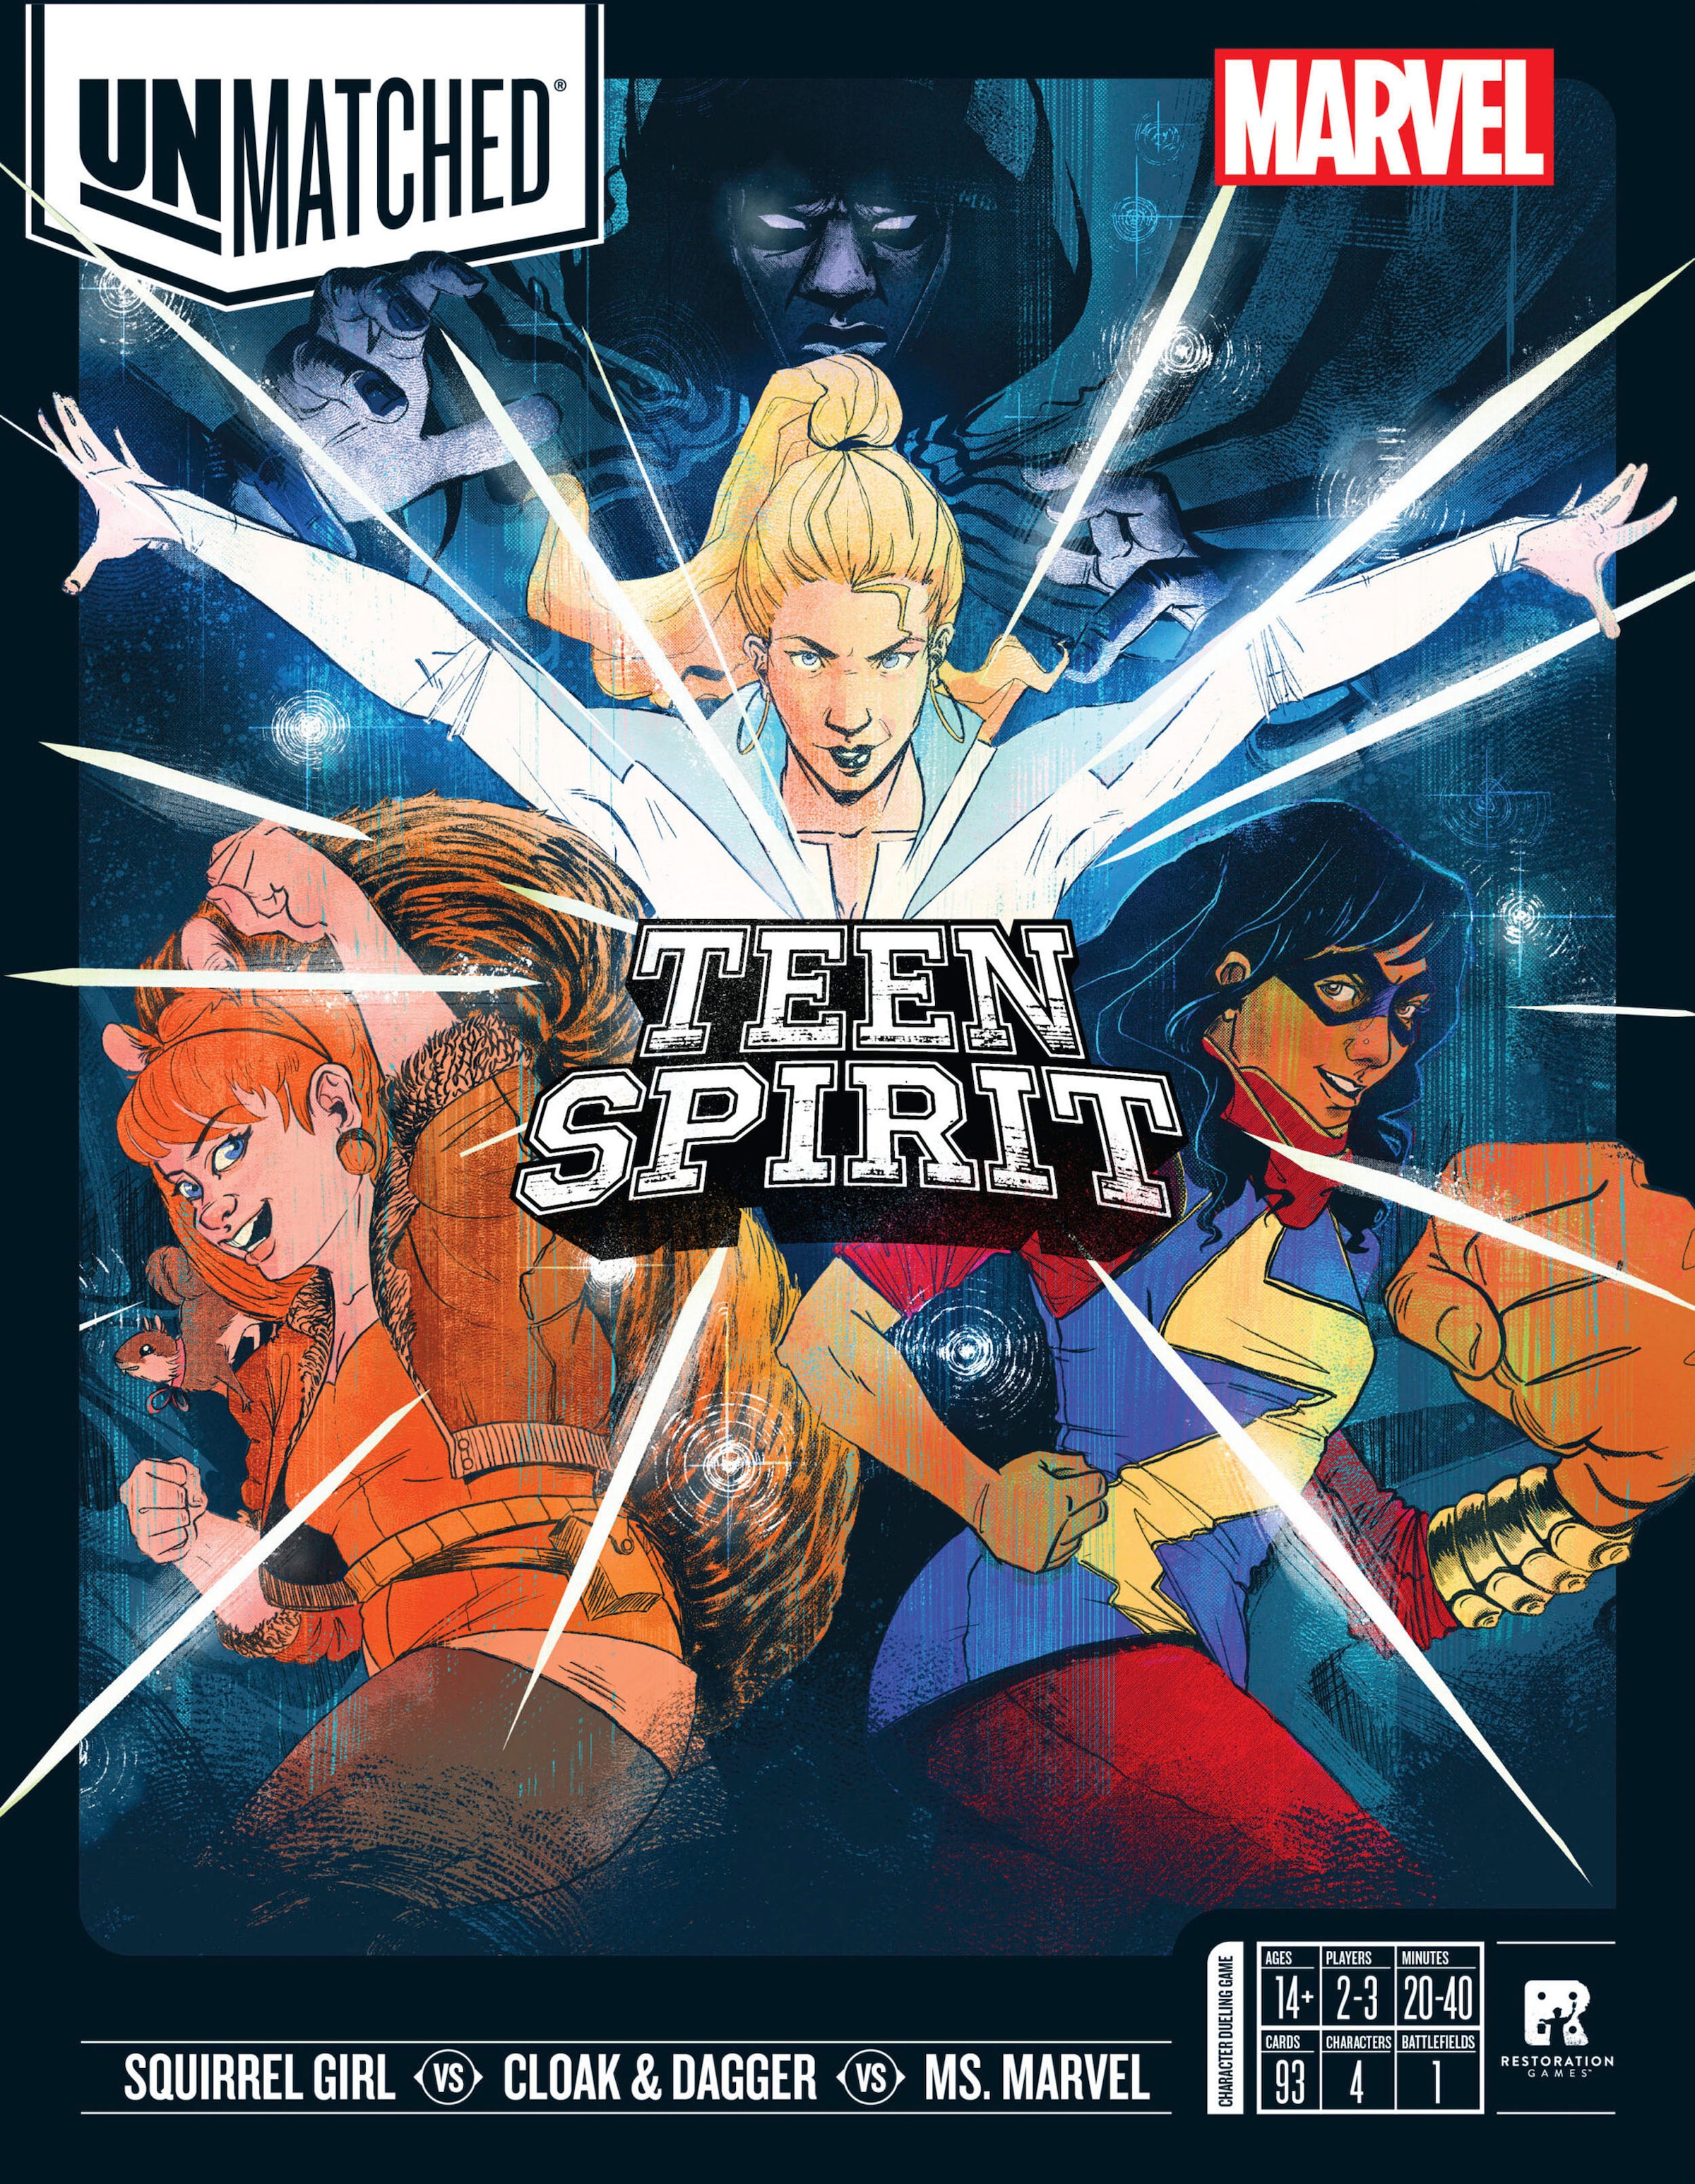 iello Spiel »Unmatched Marvel: Teen Spirit«